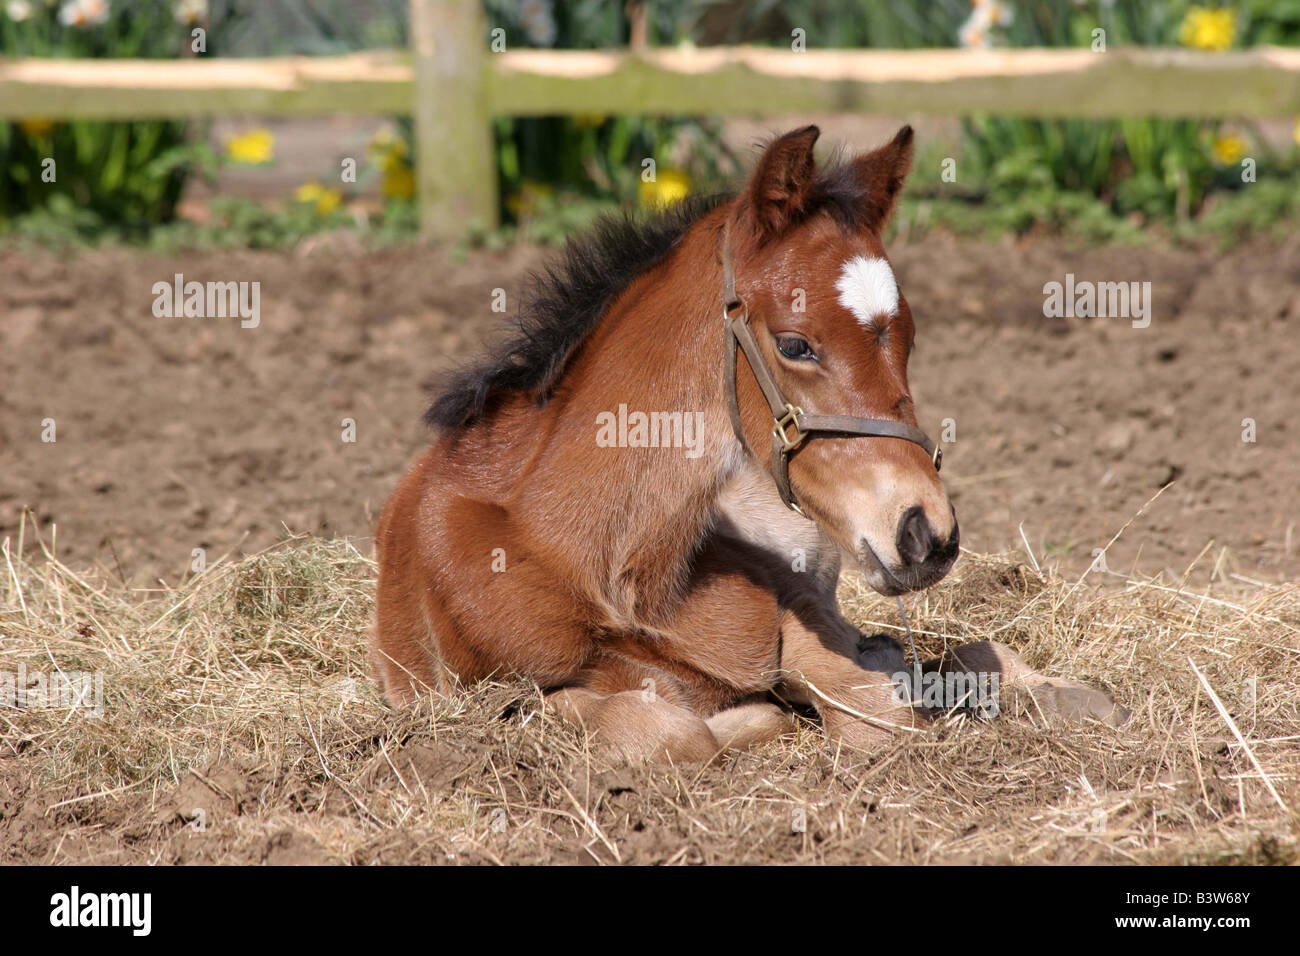 Jeune Foal posé sur la paille dans un champ ouvert Banque D'Images